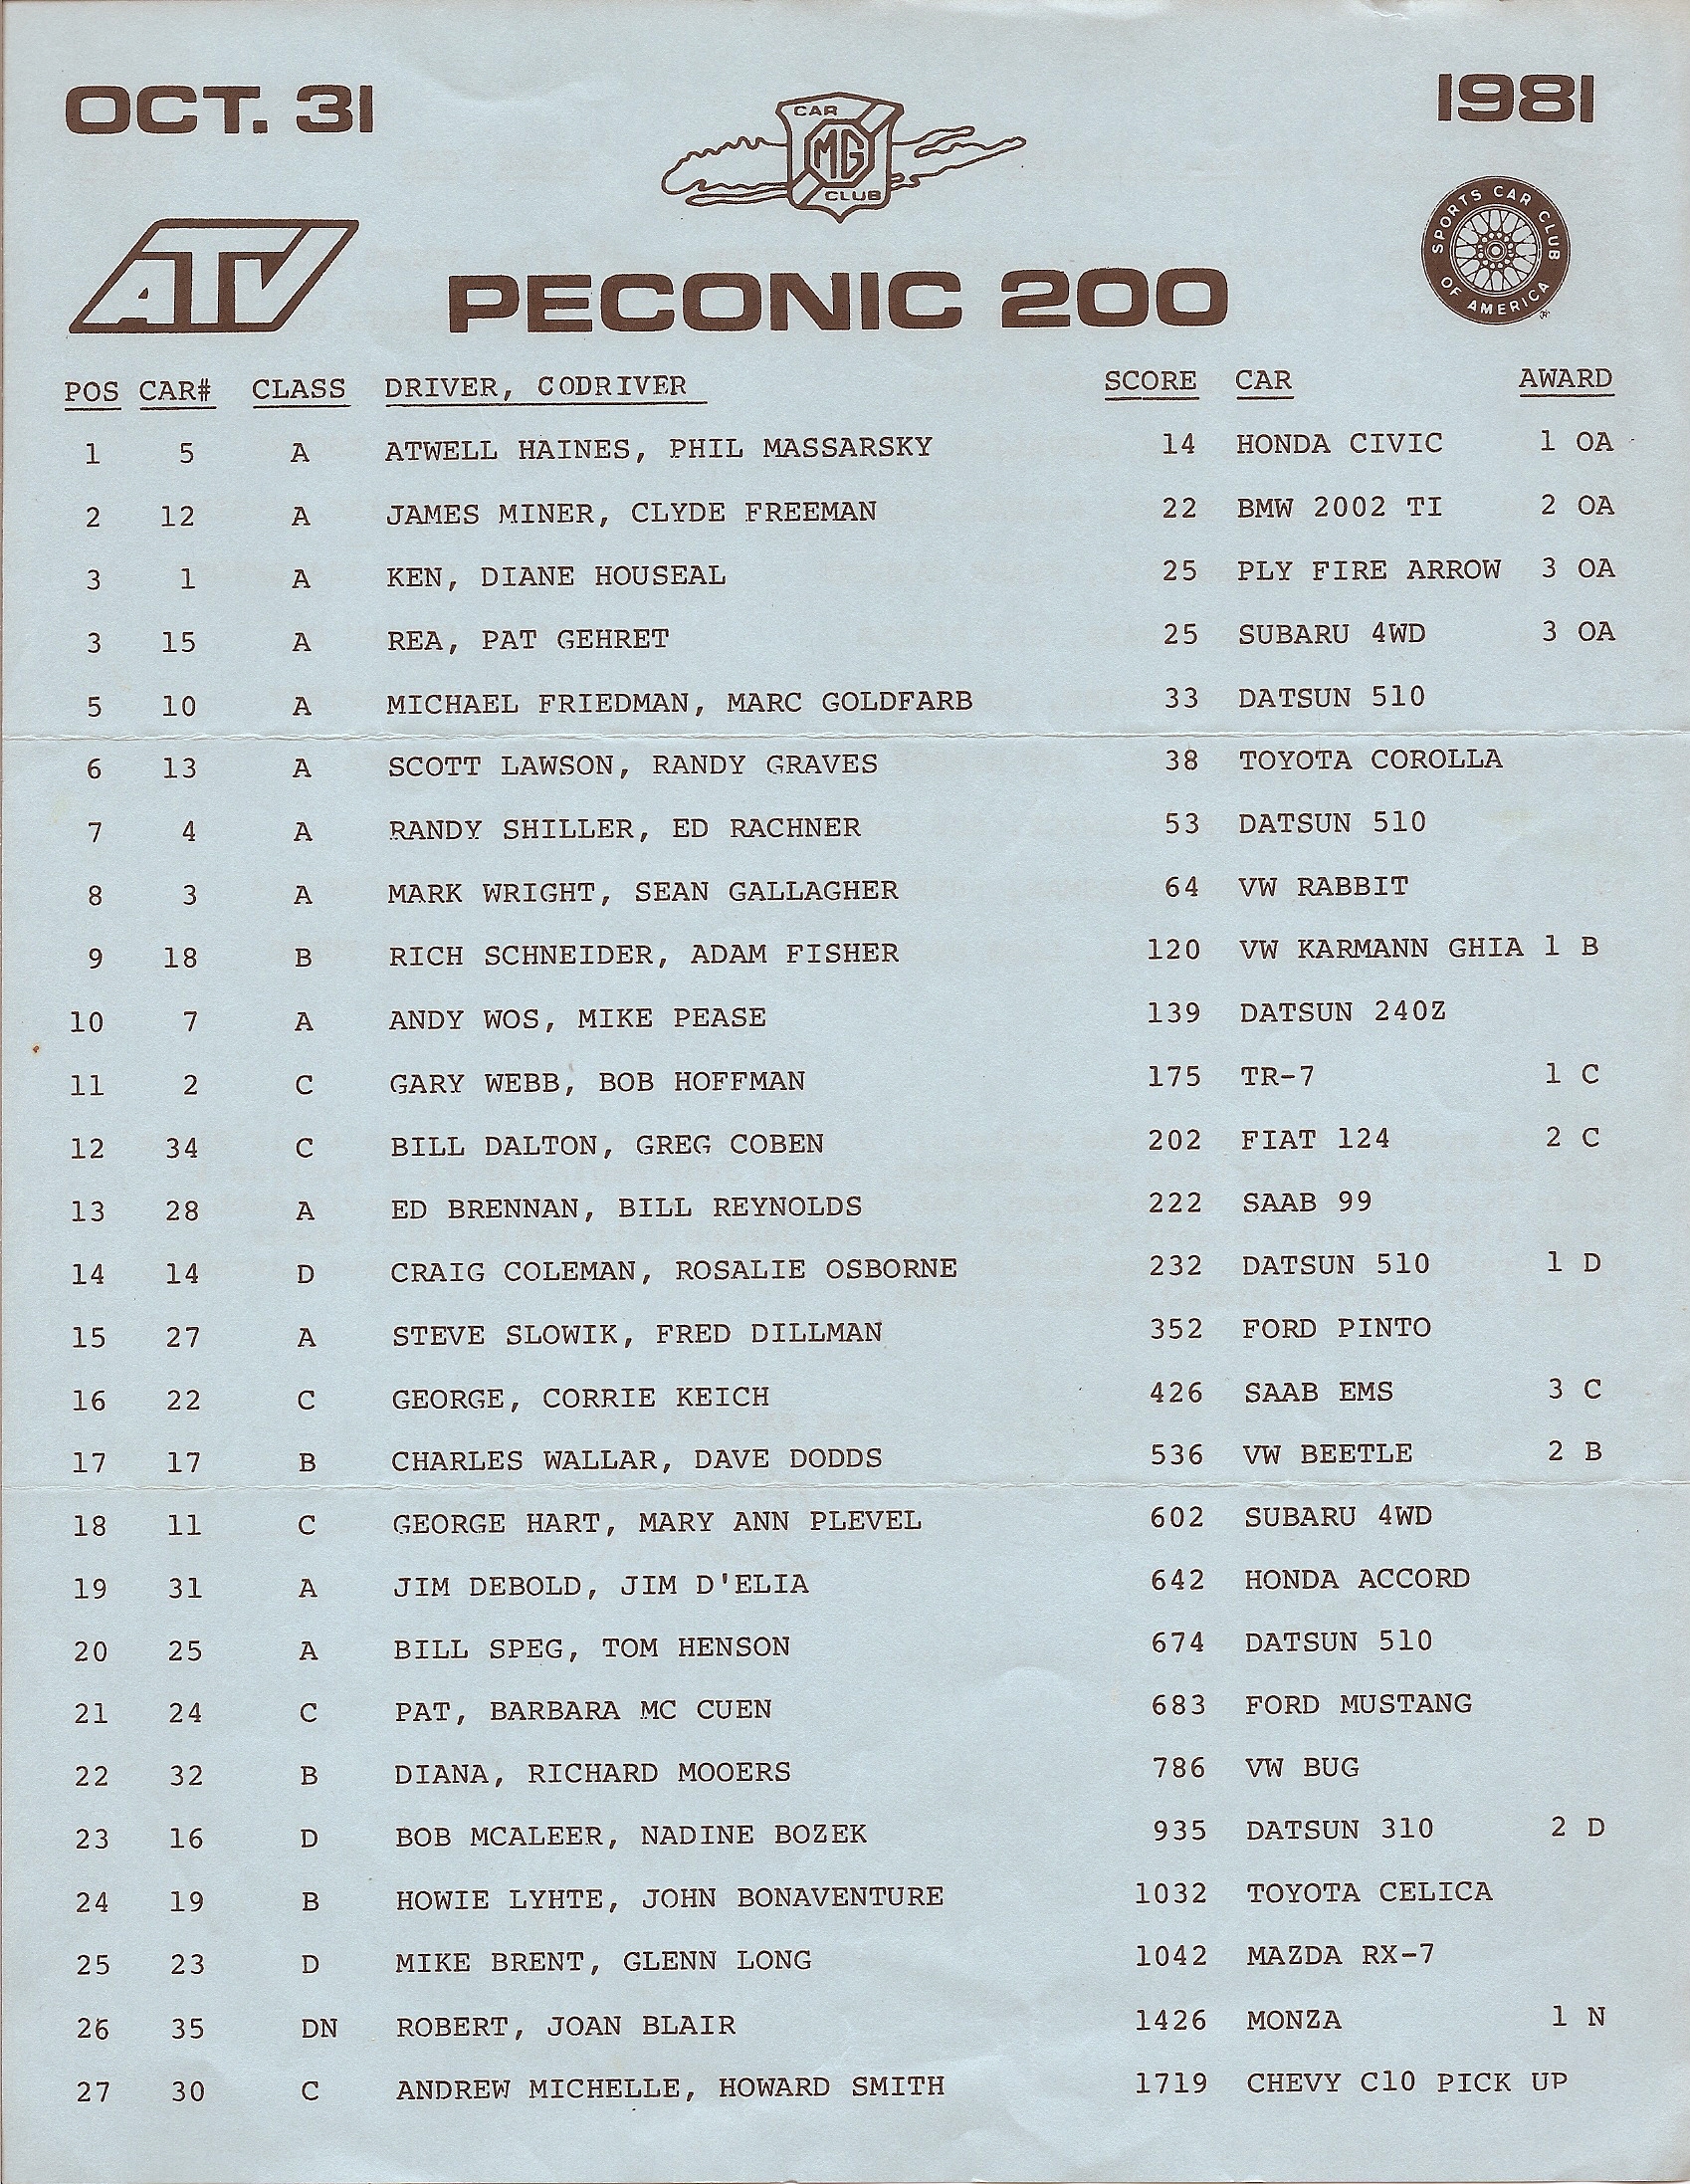 Peconic 200 1981